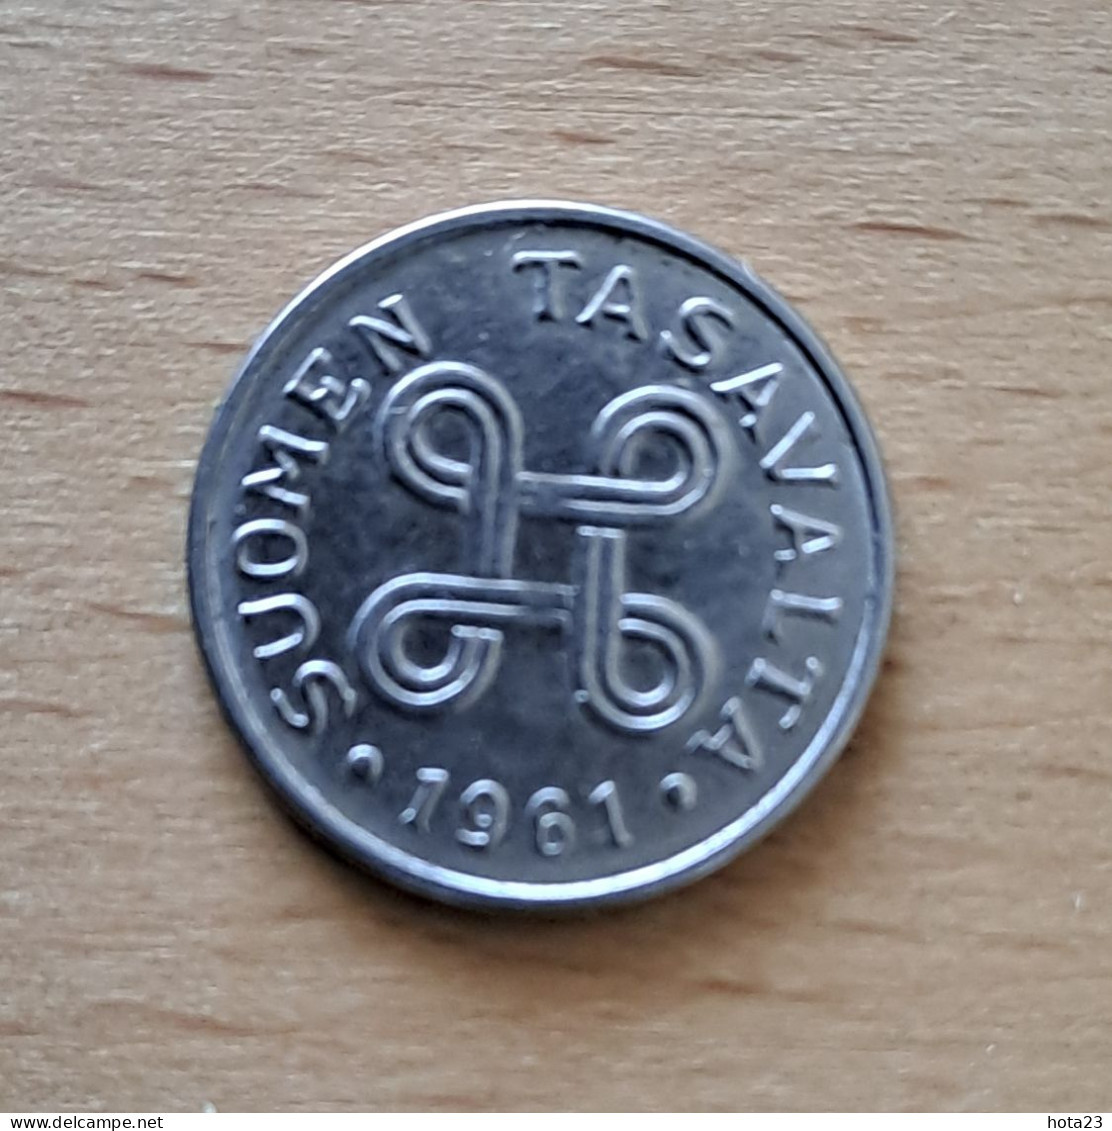 1961 Finland 1 One Markka Coin KM  - Circ - Finnland